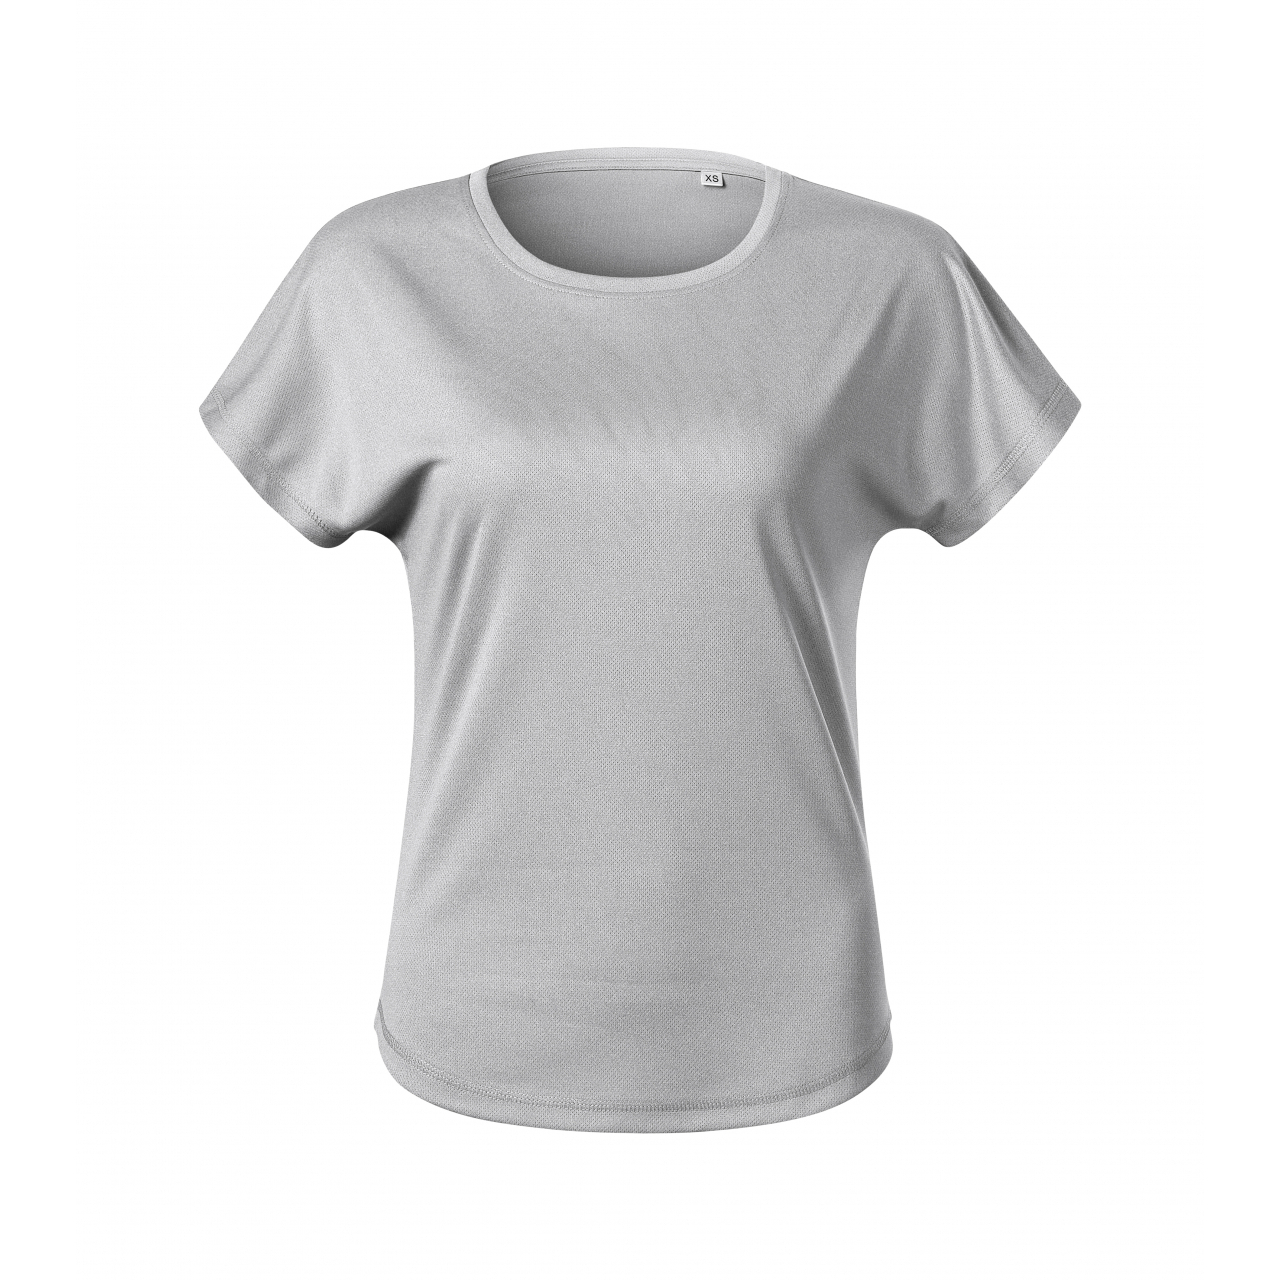 Tričko dámské Malfini Chance - světle šedé, XL